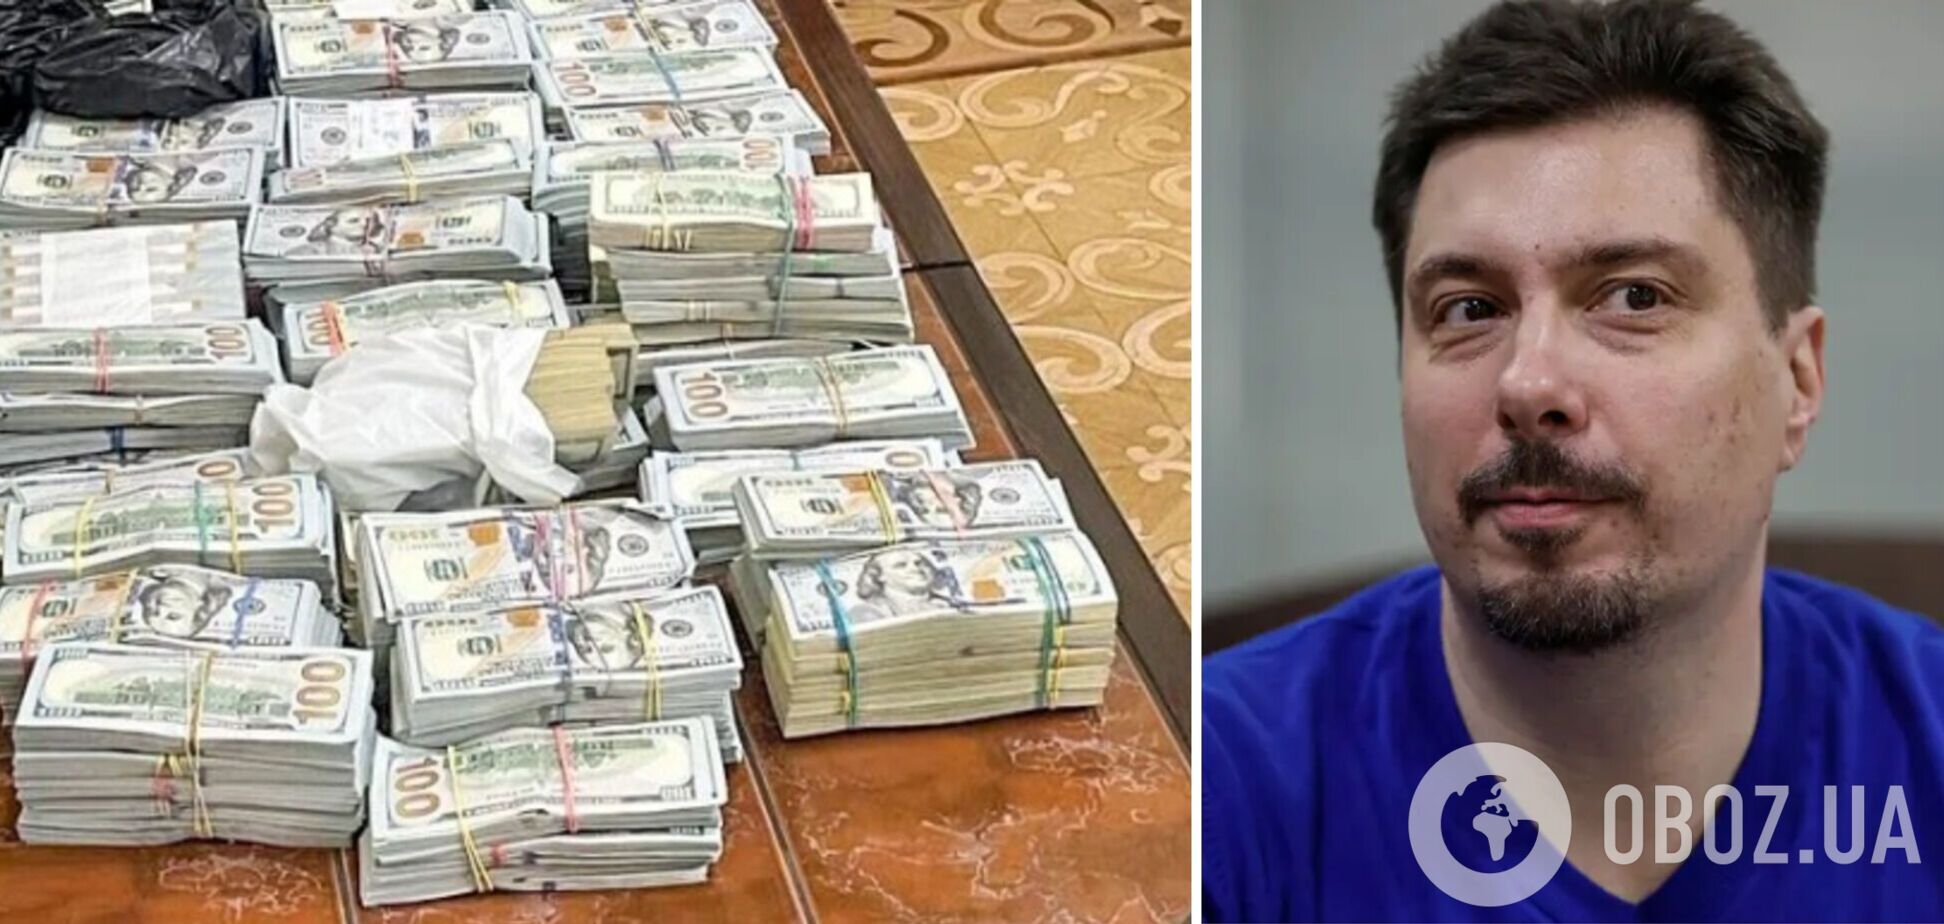 'Это деньги моих друзей': экс-председатель Верховного суда Князев утверждает, что найденные у него почти полмиллиона долларов не его